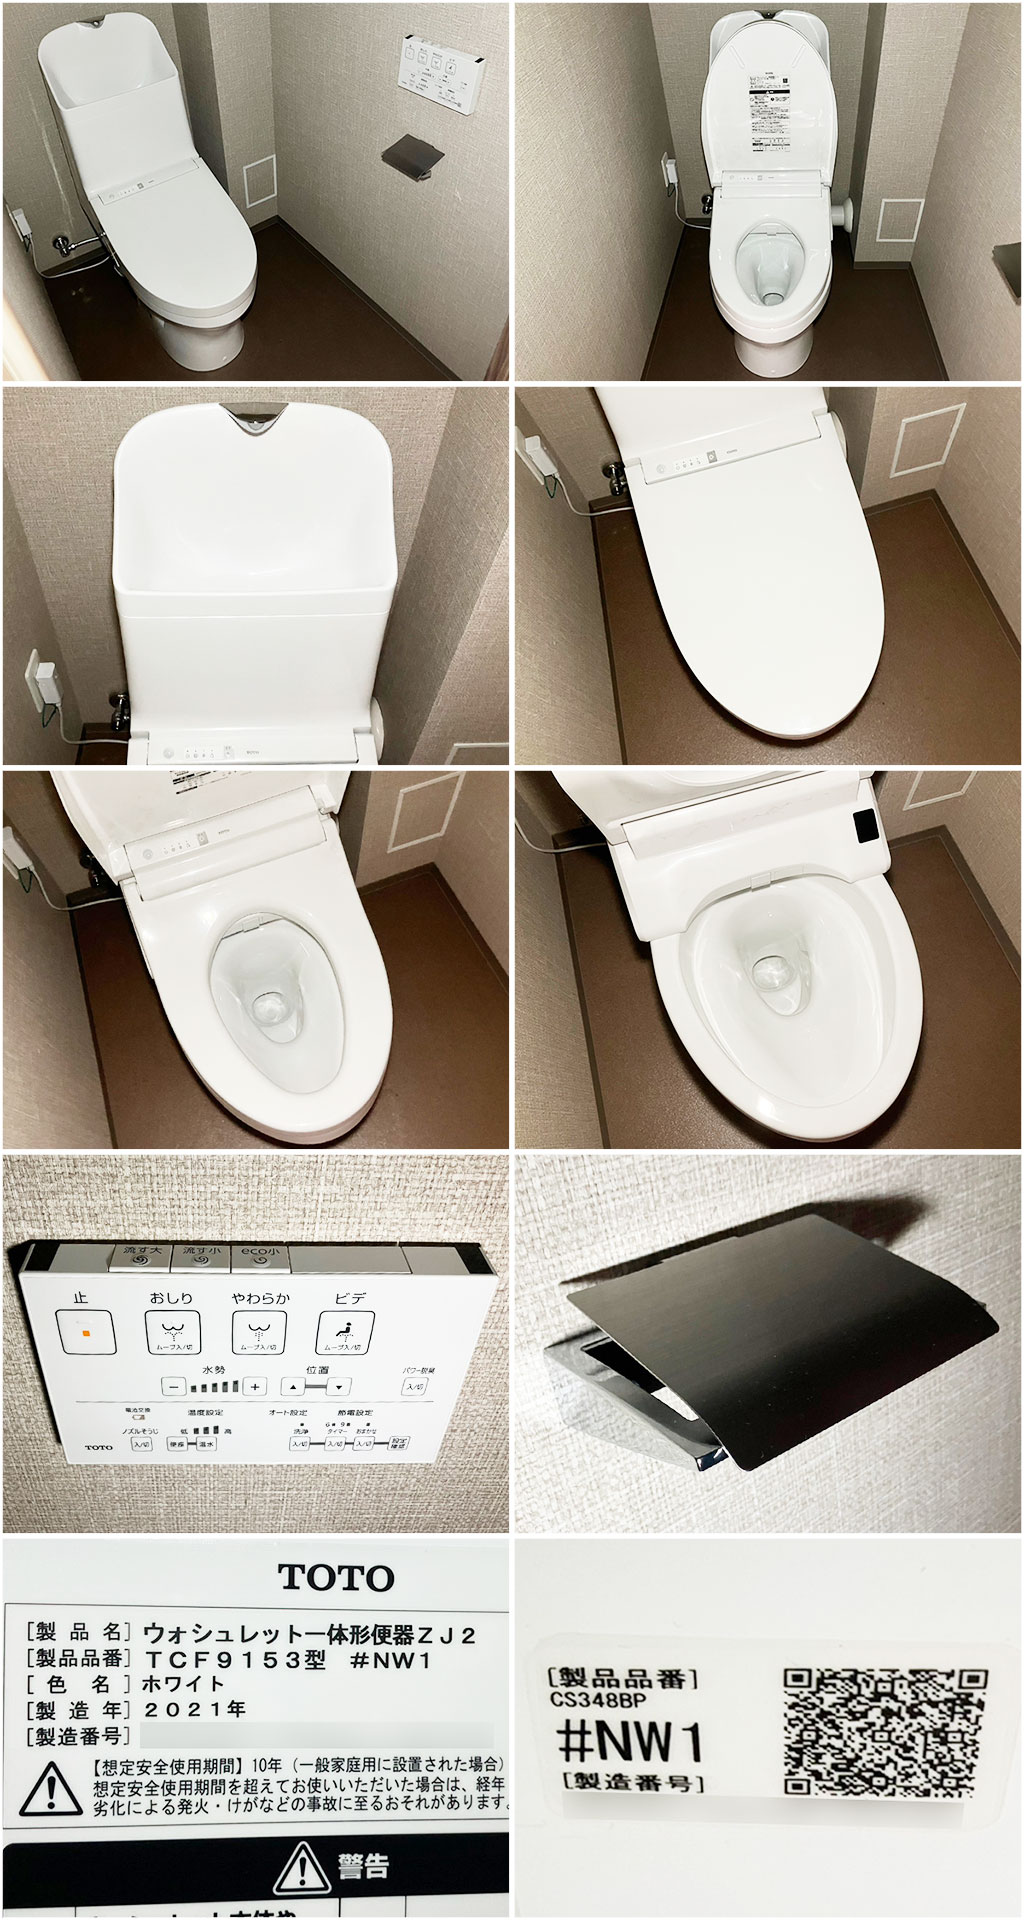 予約中！未使用 TOTO トイレ ウォシュレット一体型便器 ZJ1 #NW1 TCF9151/CS348B リモコン付/床排水/手洗い付き 便器